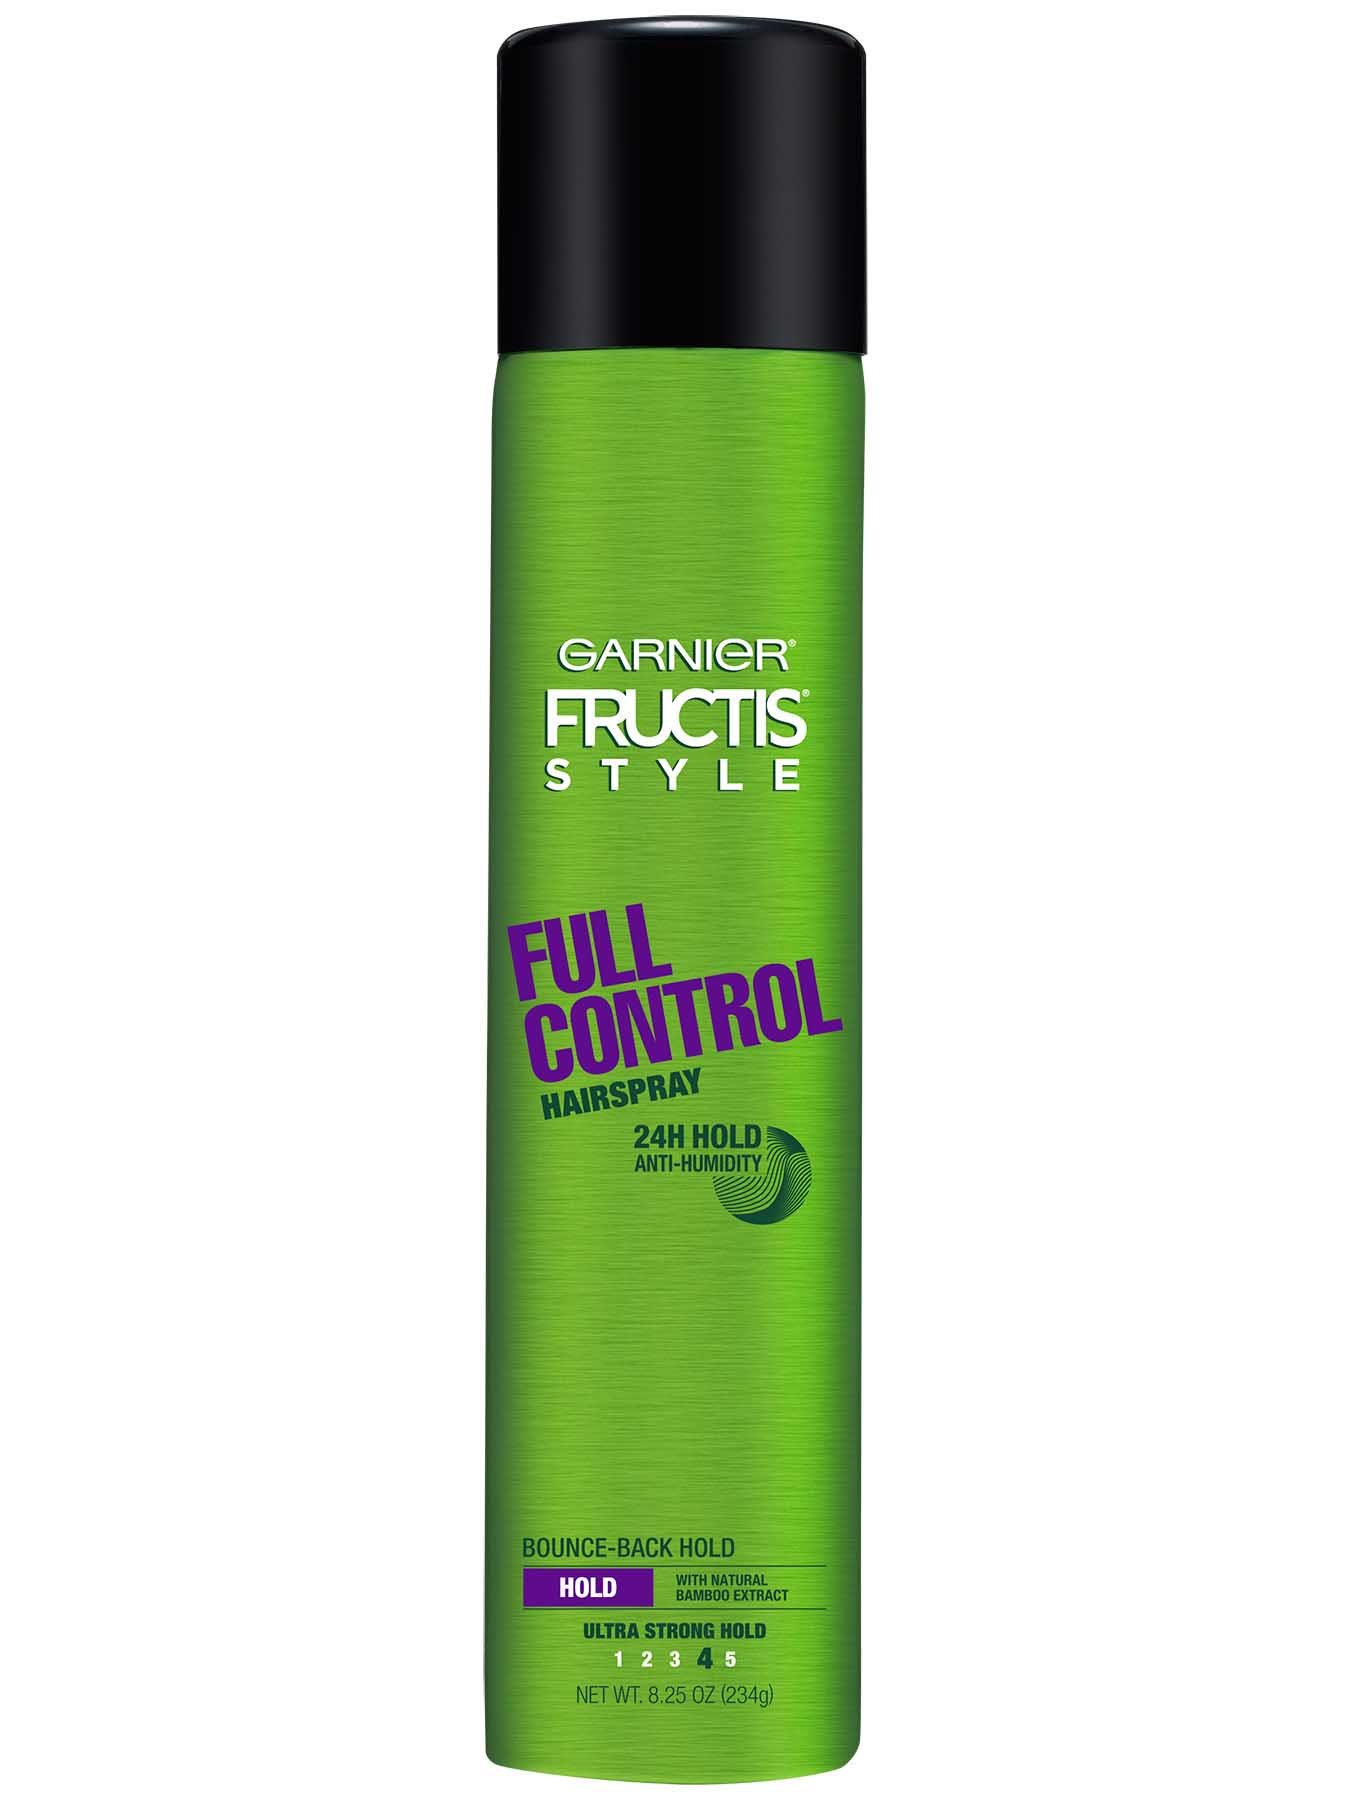 Full Control Anti-Humidity Aerosol Hairspray - Garnier 